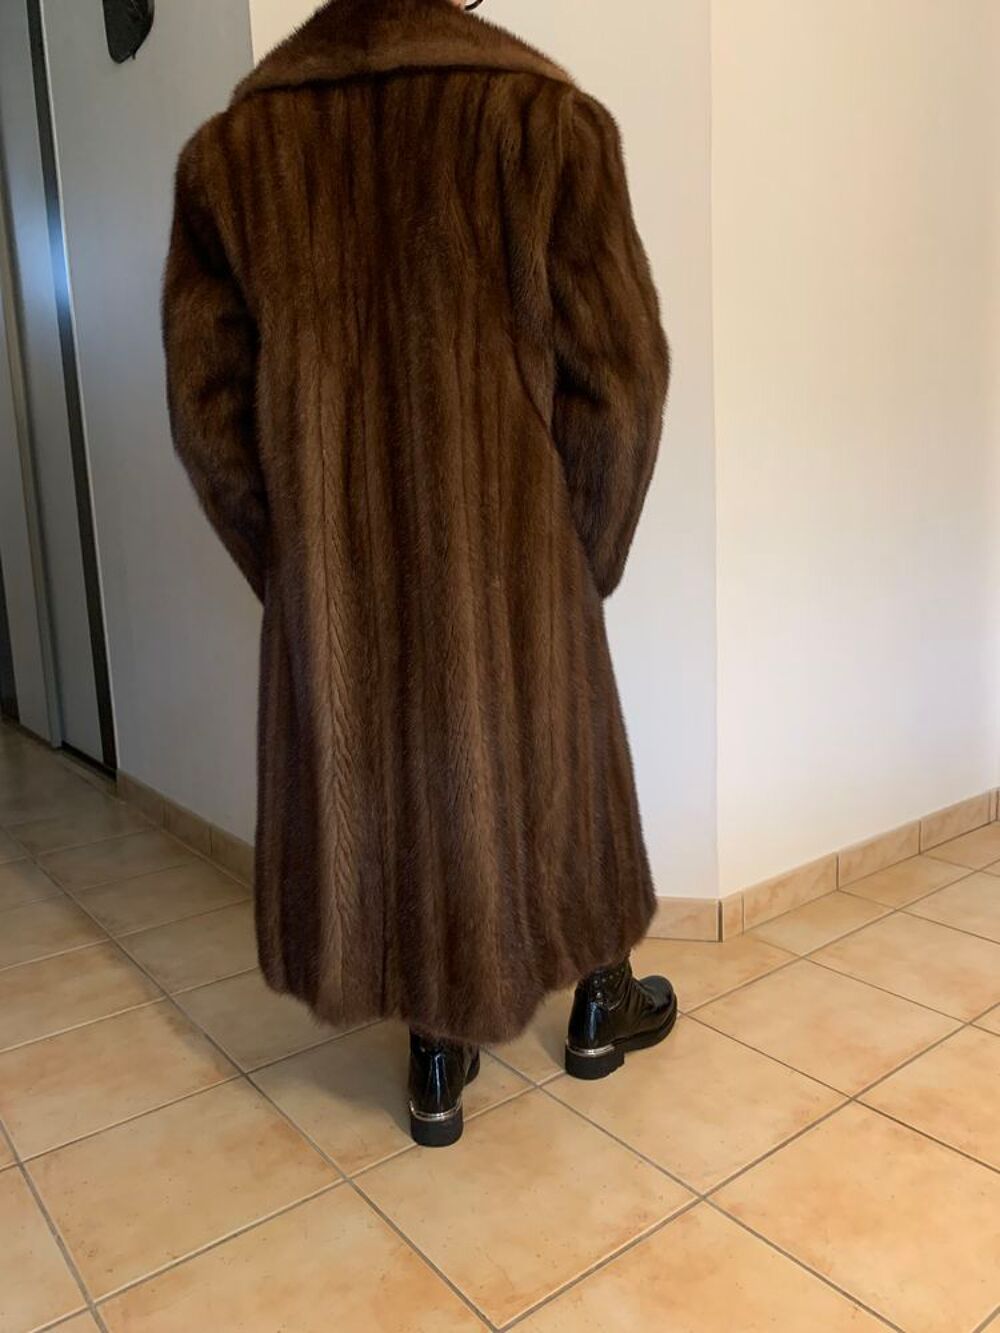 Manteau vison roux/brun taille 40/42 Vtements